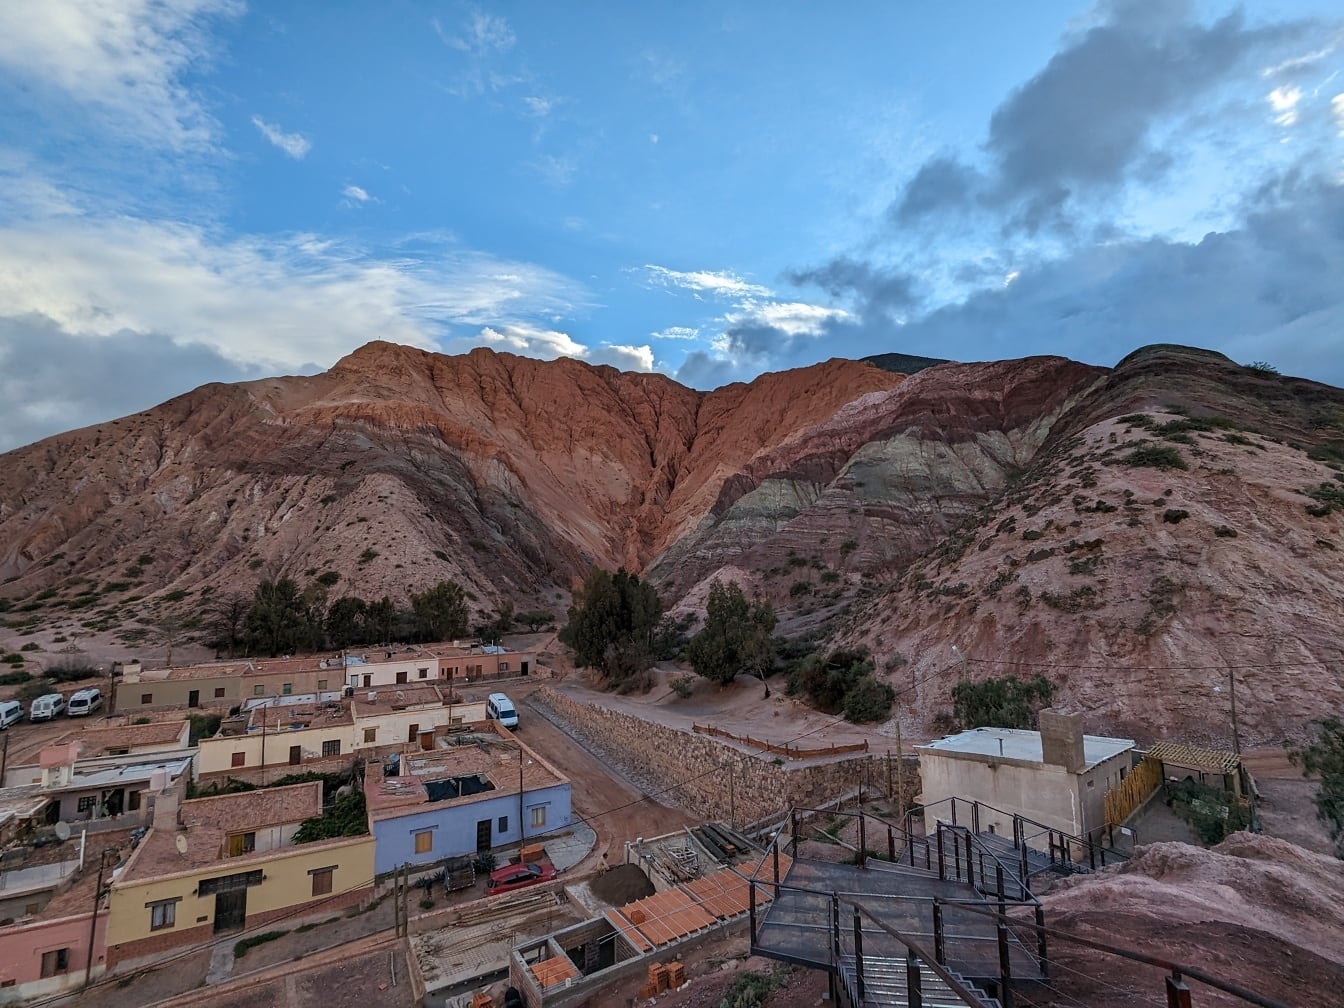 Landsbyen Purmamarca i en Quebrada de Humahuaca-dal i Argentina med fjell i bakgrunnen